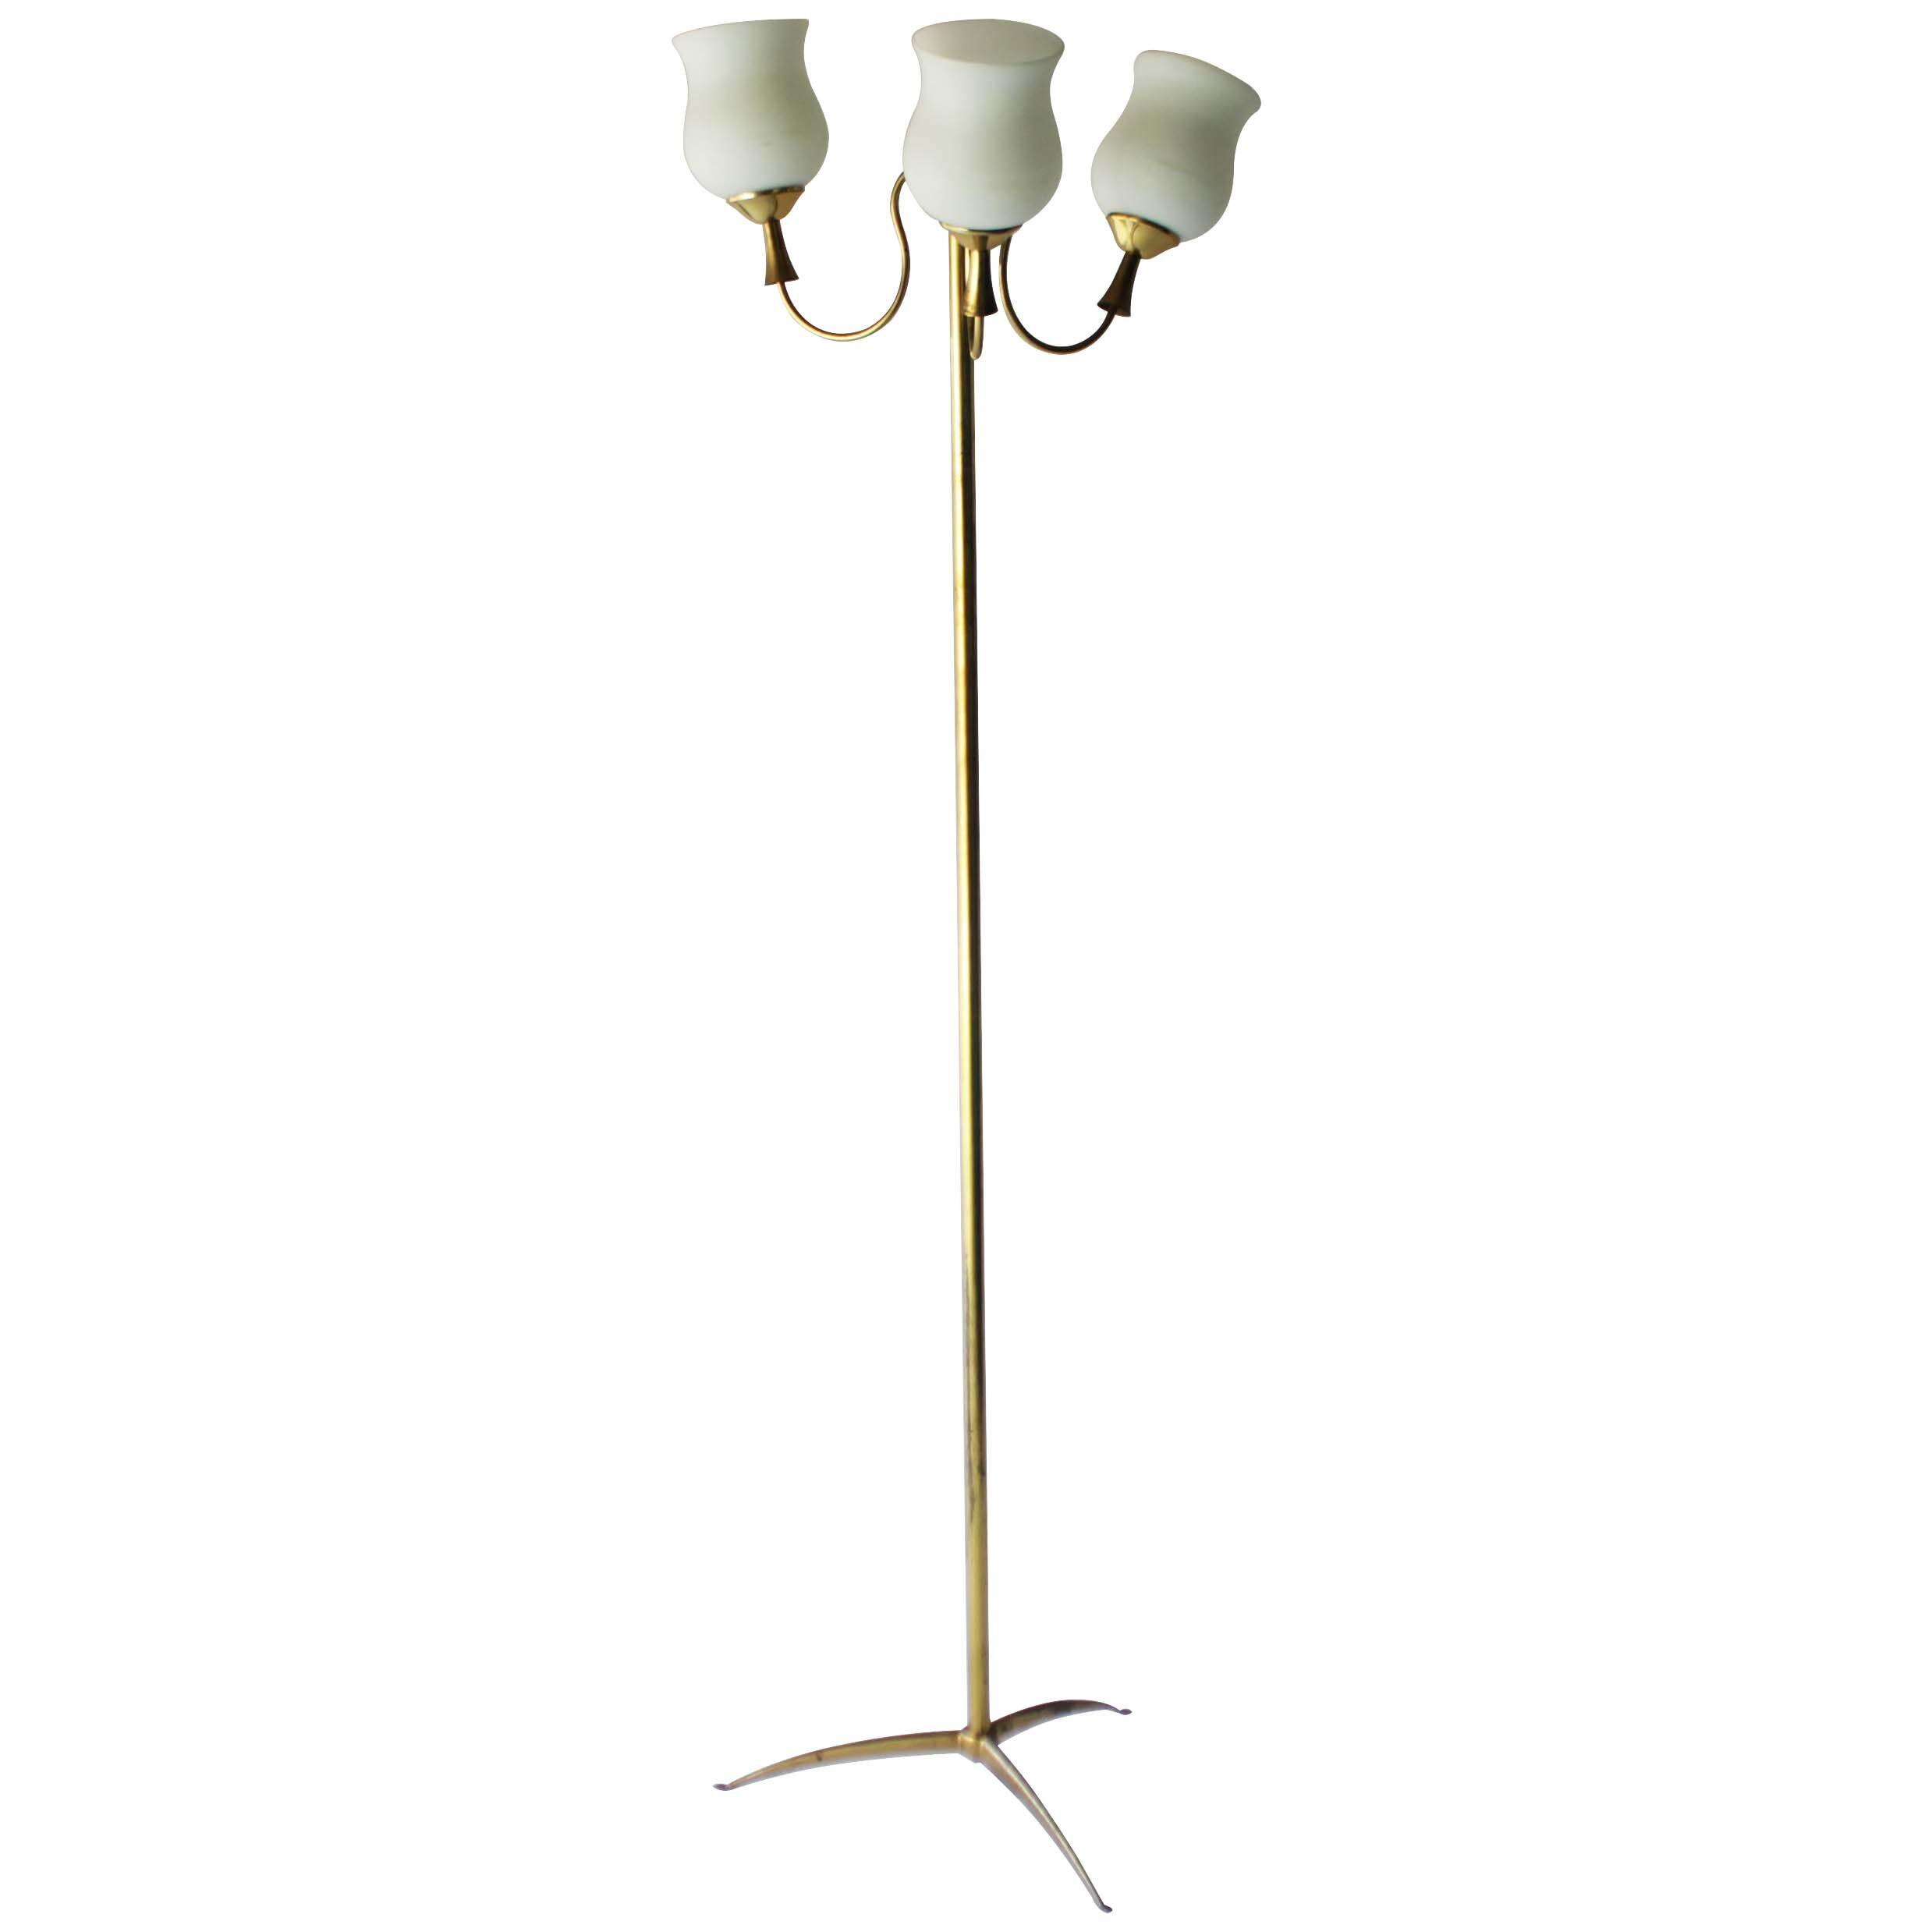 Elegant Italian Floor Lamp by Arredoluce